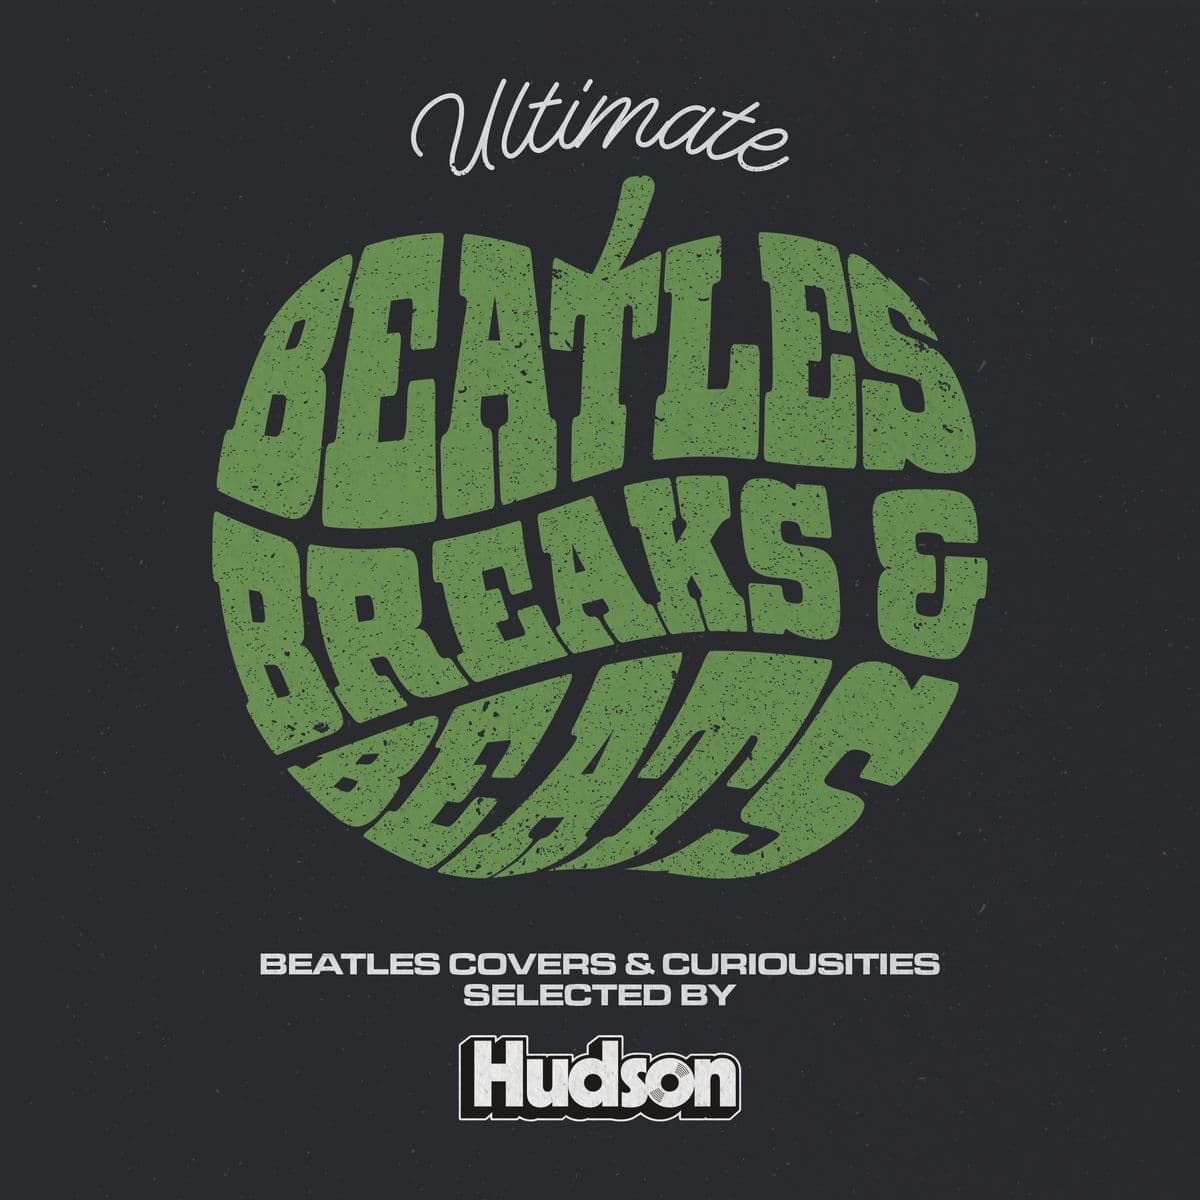 Ultimate Beatles Breaks and Beats von DJ Hudson | So hast du die Beatles Songs noch nie gehört | Mixtape